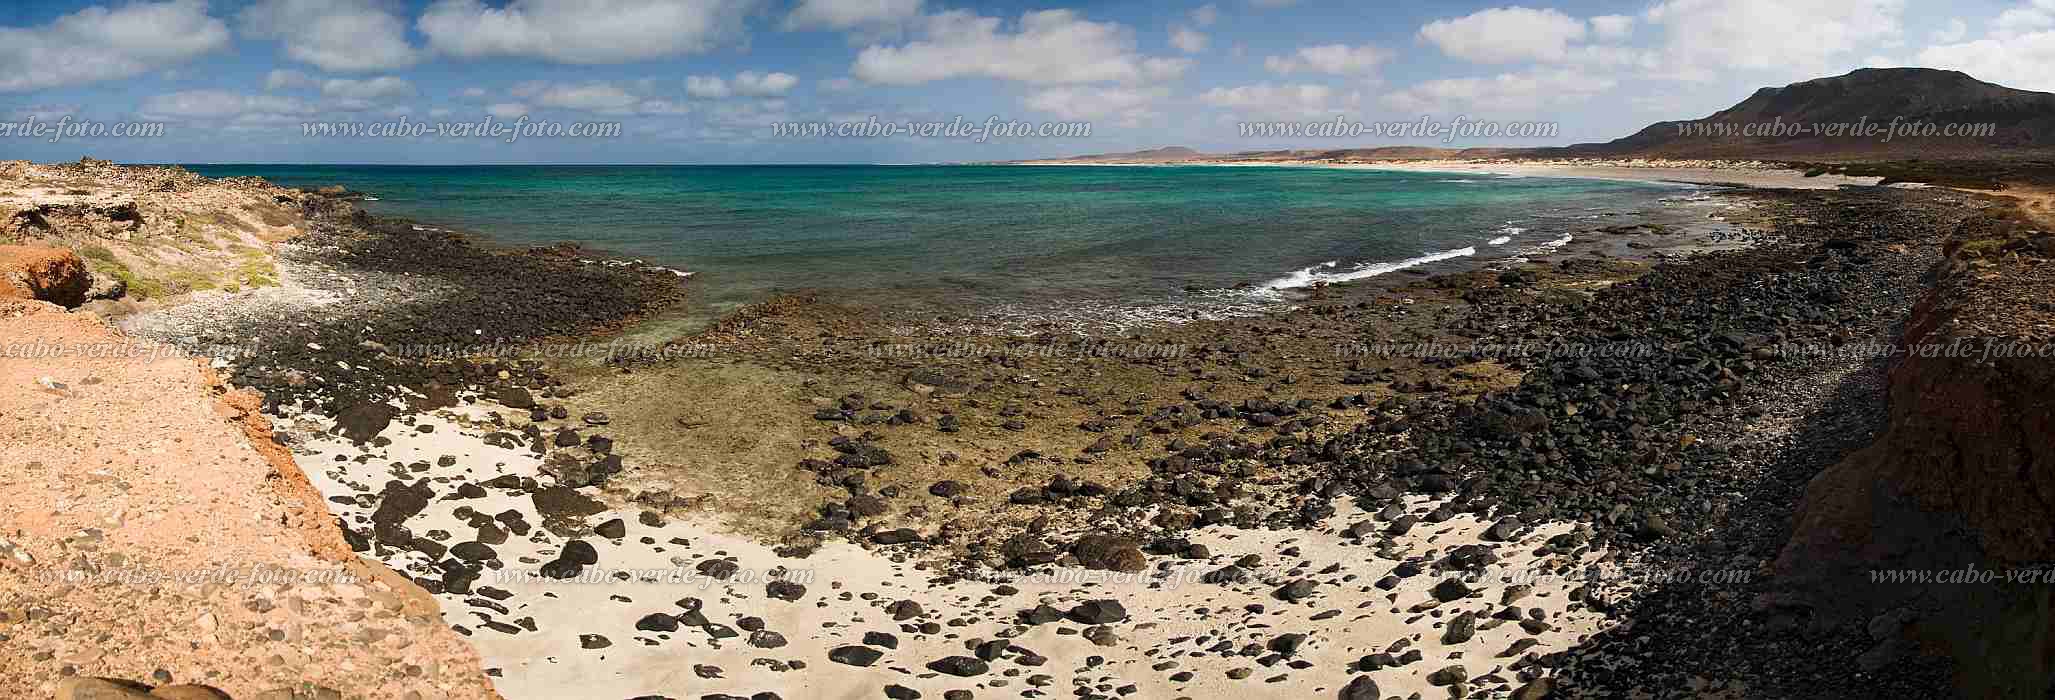 Boa Vista :  :  : Landscape SeaCabo Verde Foto Gallery